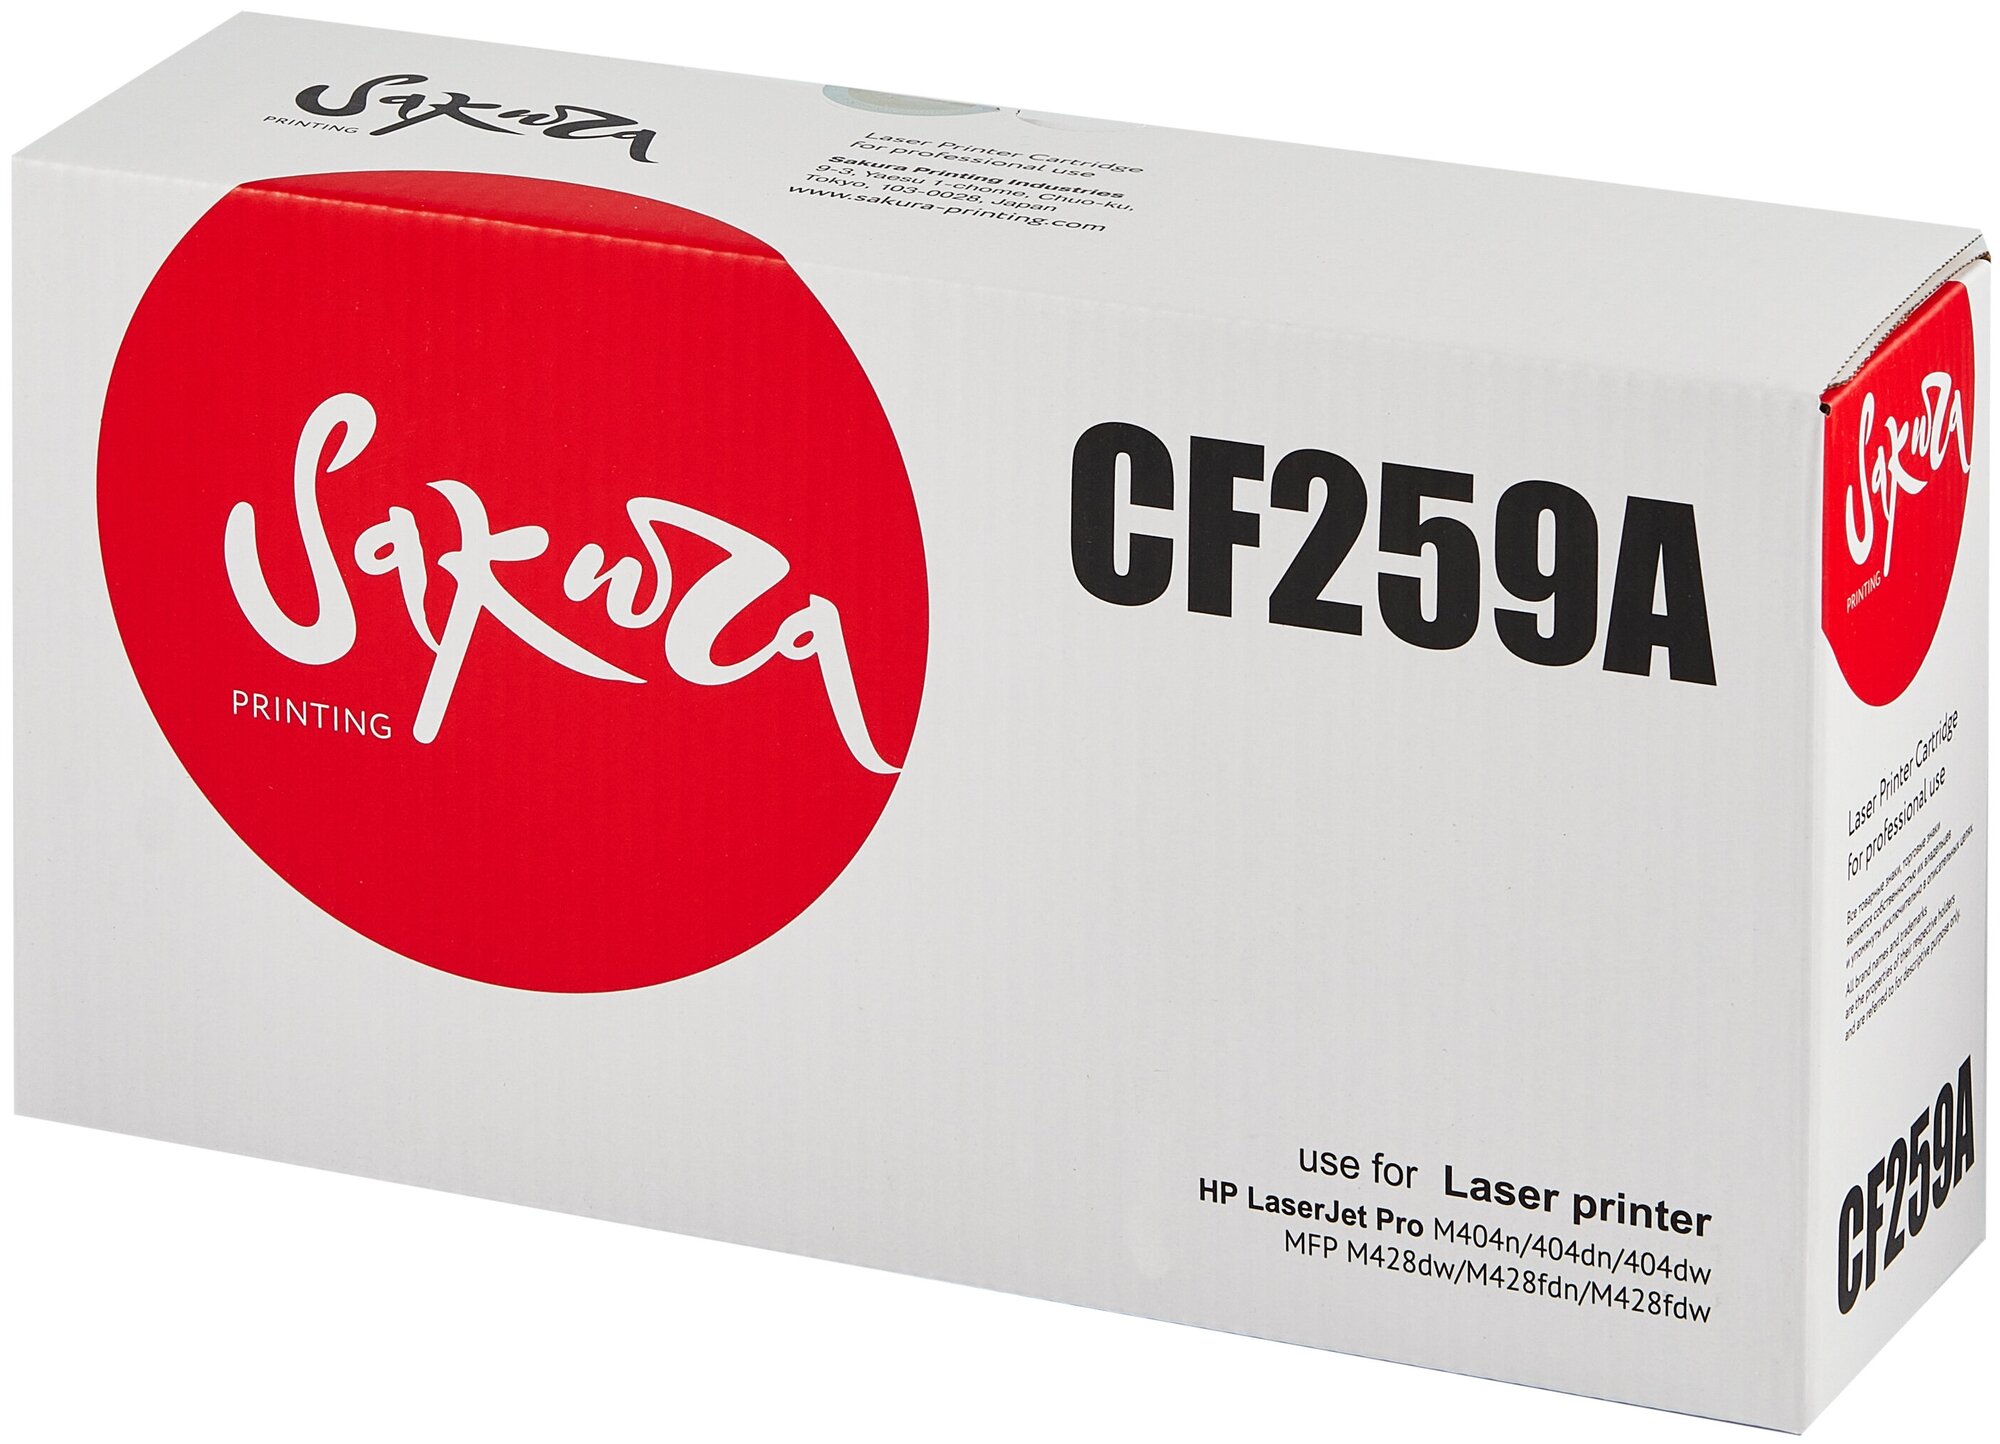 Картридж CF259A (59A) для HP, лазерный, цвет черный, 3000 страниц, Sakura